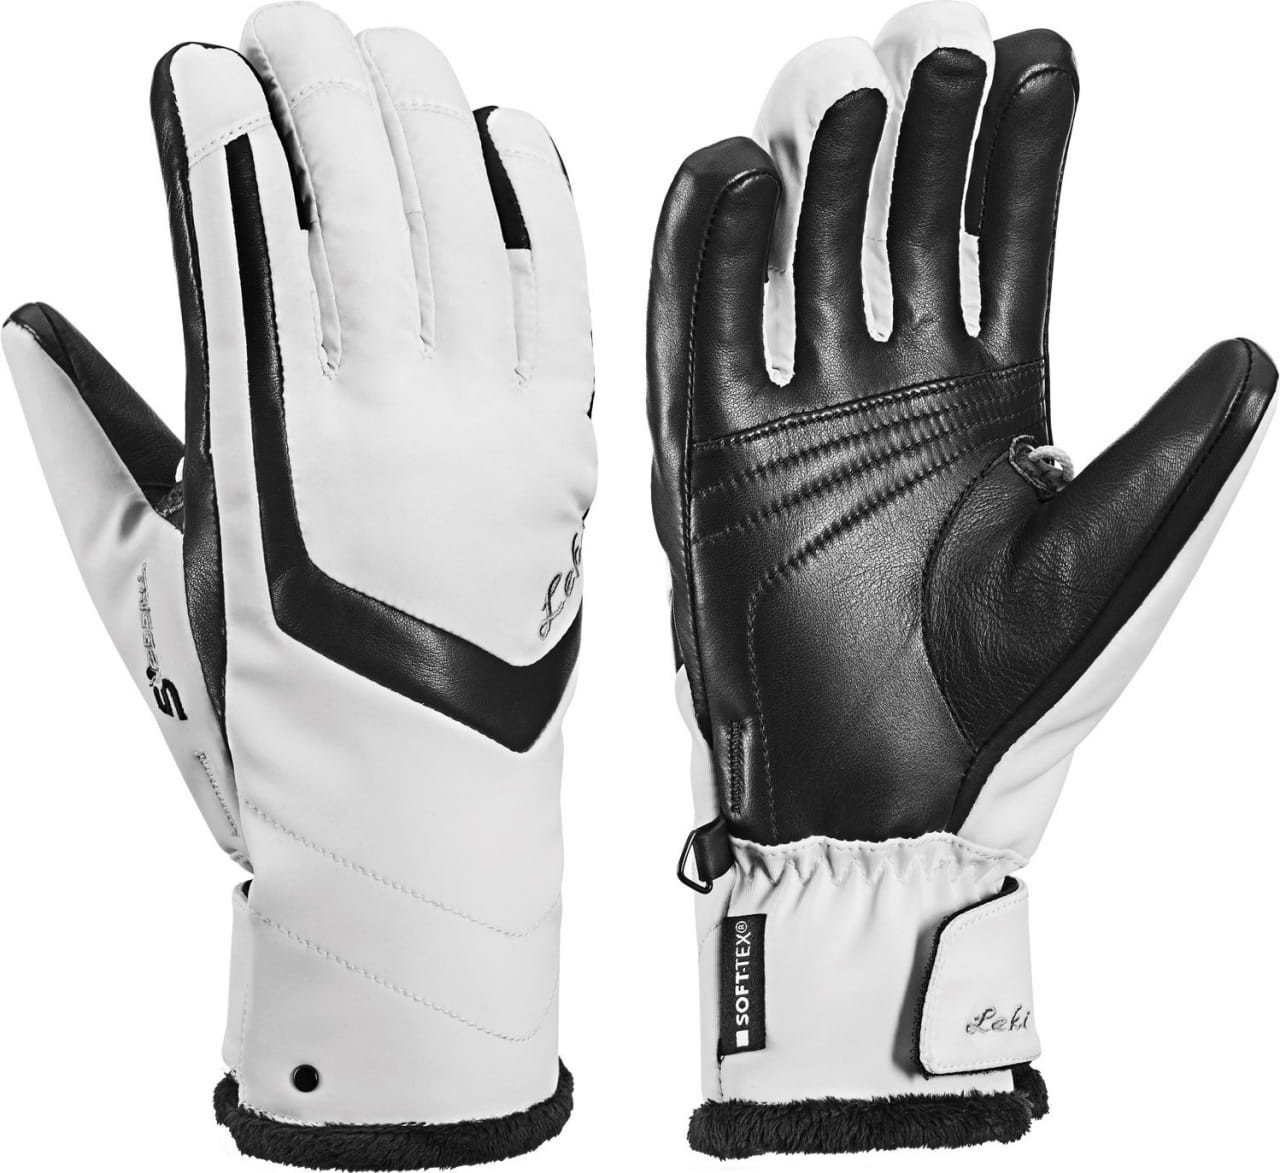 SkI Handschuhe Leki Stella S White/Black 6,5 SkI Handschuhe